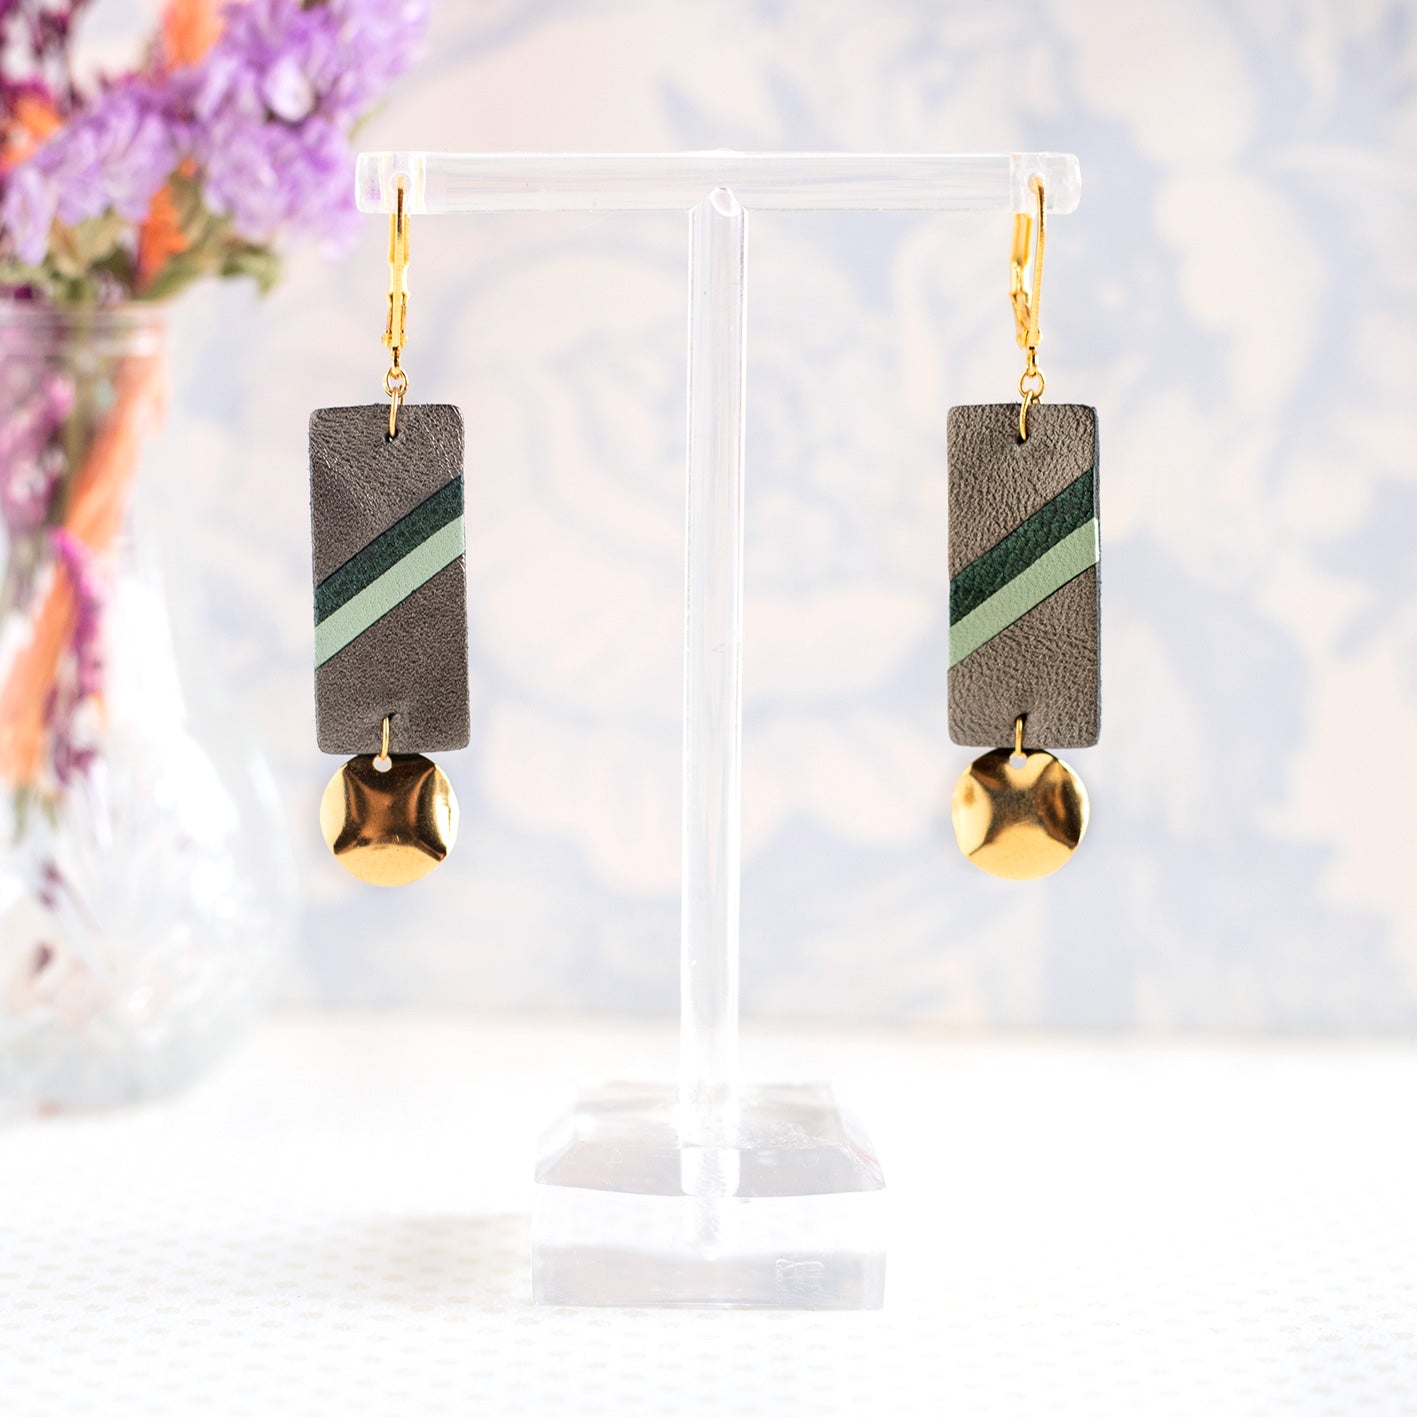 Graue und grüne Margot-Ohrringe aus Metall